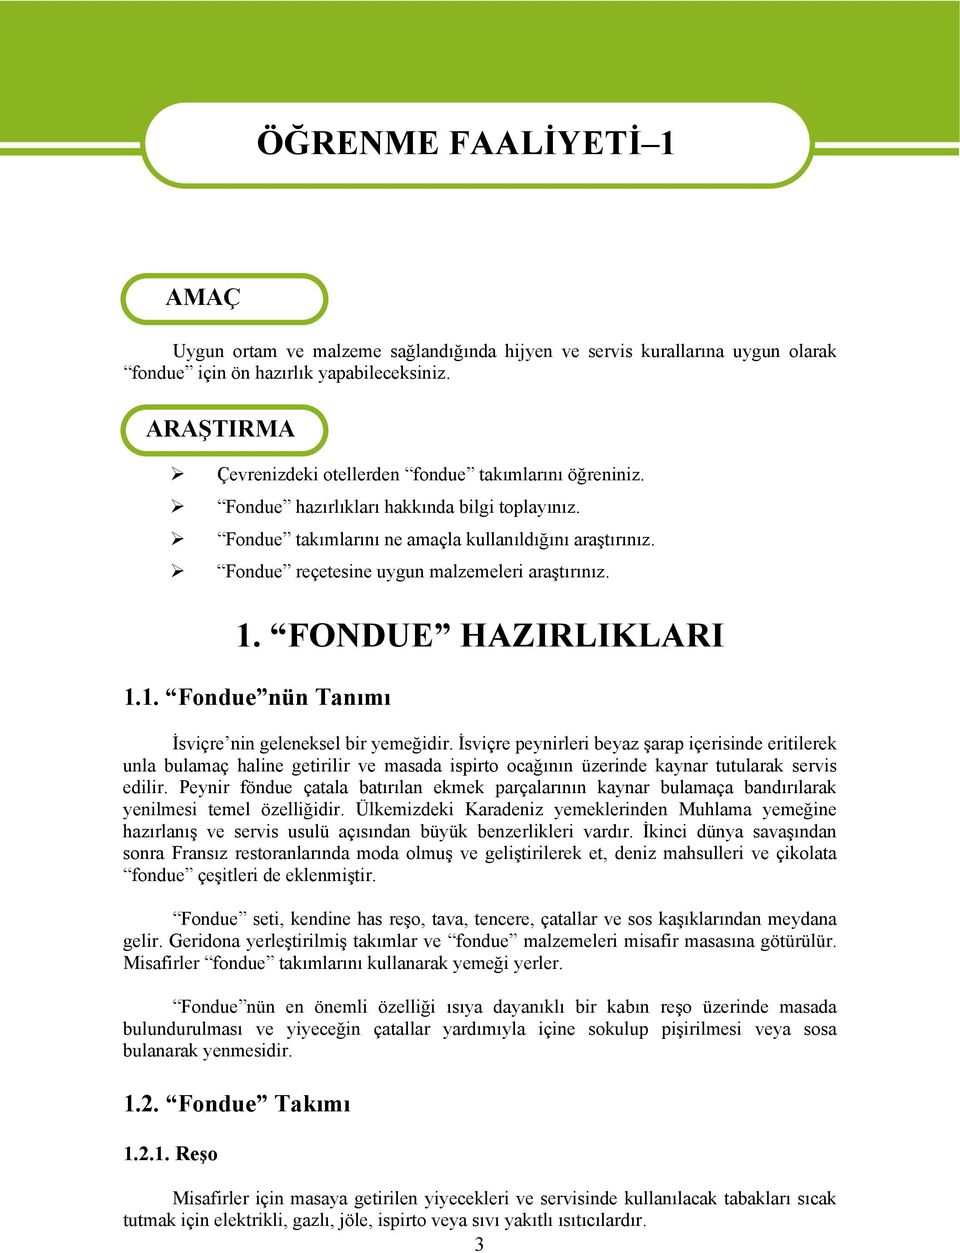 Fondue reçetesine uygun malzemeleri araştırınız. 1. FONDUE HAZIRLIKLARI 1.1. Fondue nün Tanımı İsviçre nin geleneksel bir yemeğidir.